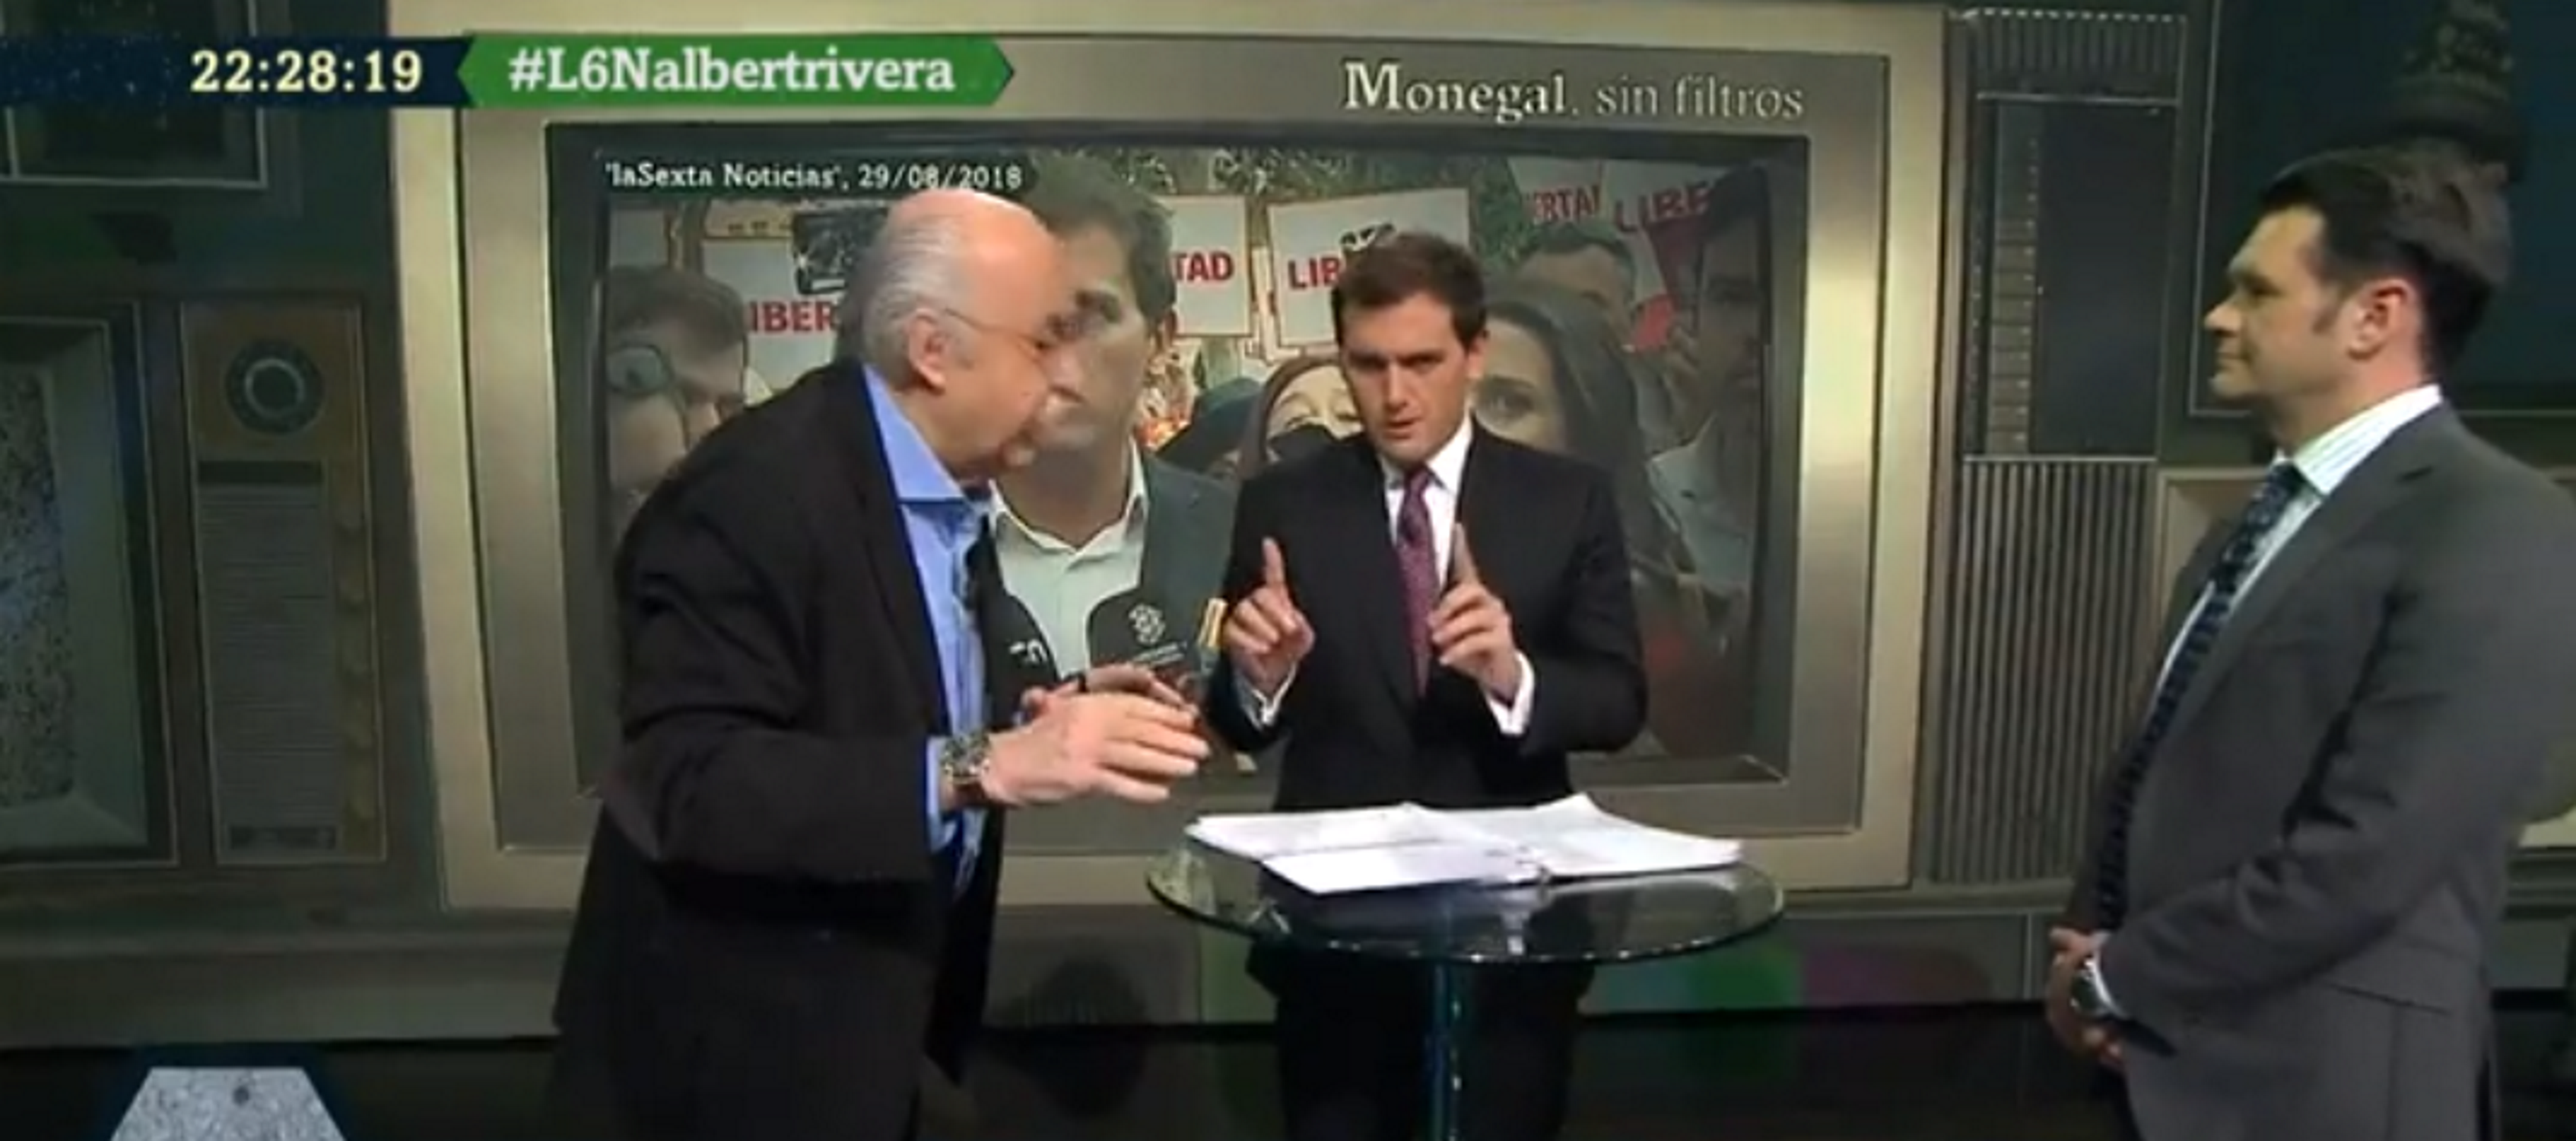 Tensión Rivera-Monegal por los lazos amarillos y TV3 (dejando retratada a Arrimadas)